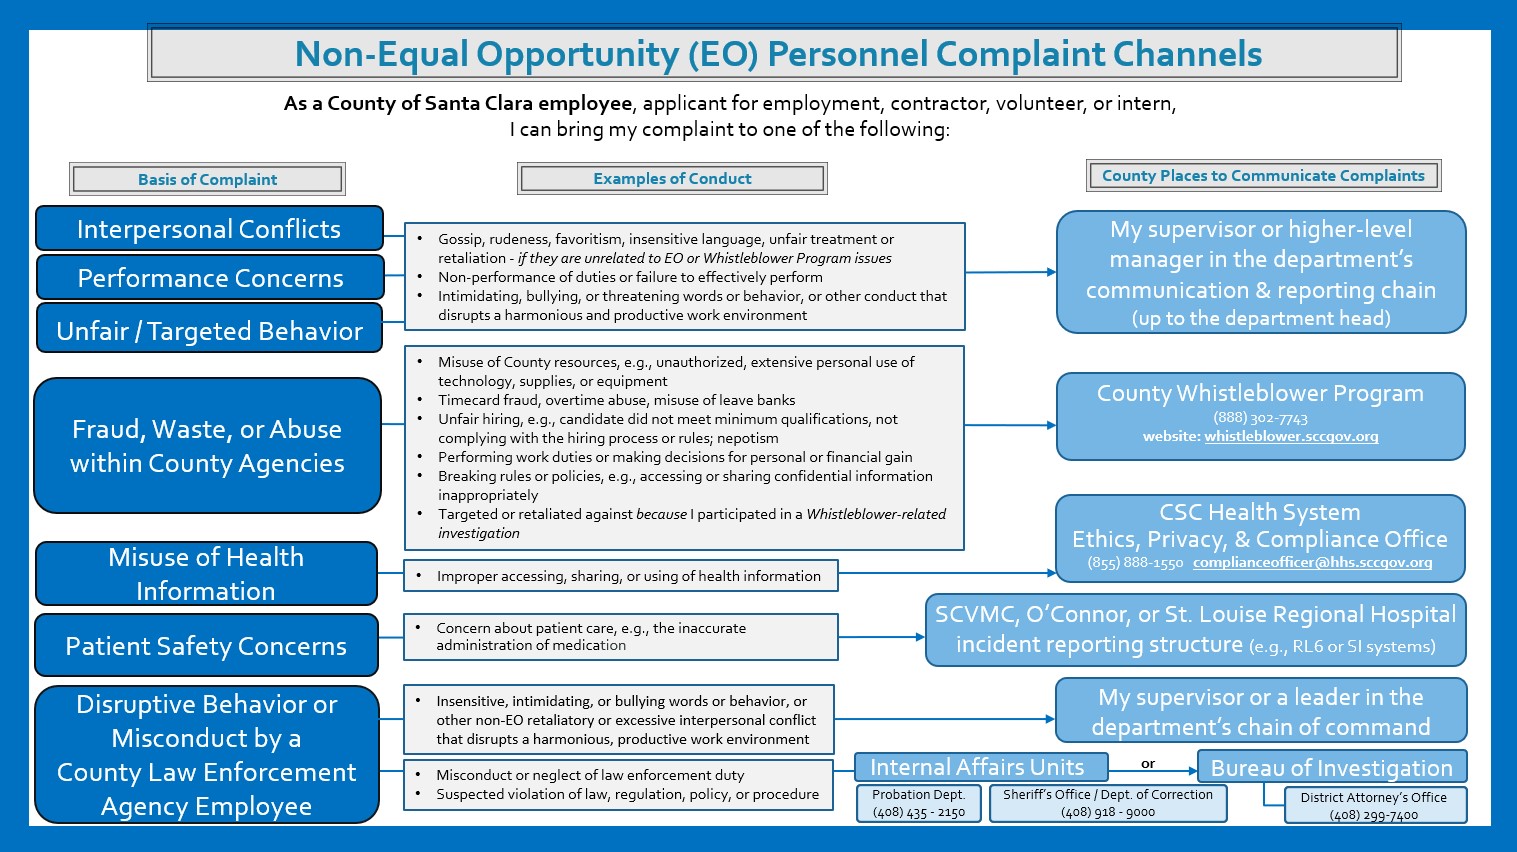 Non-EOD Complaint Channel